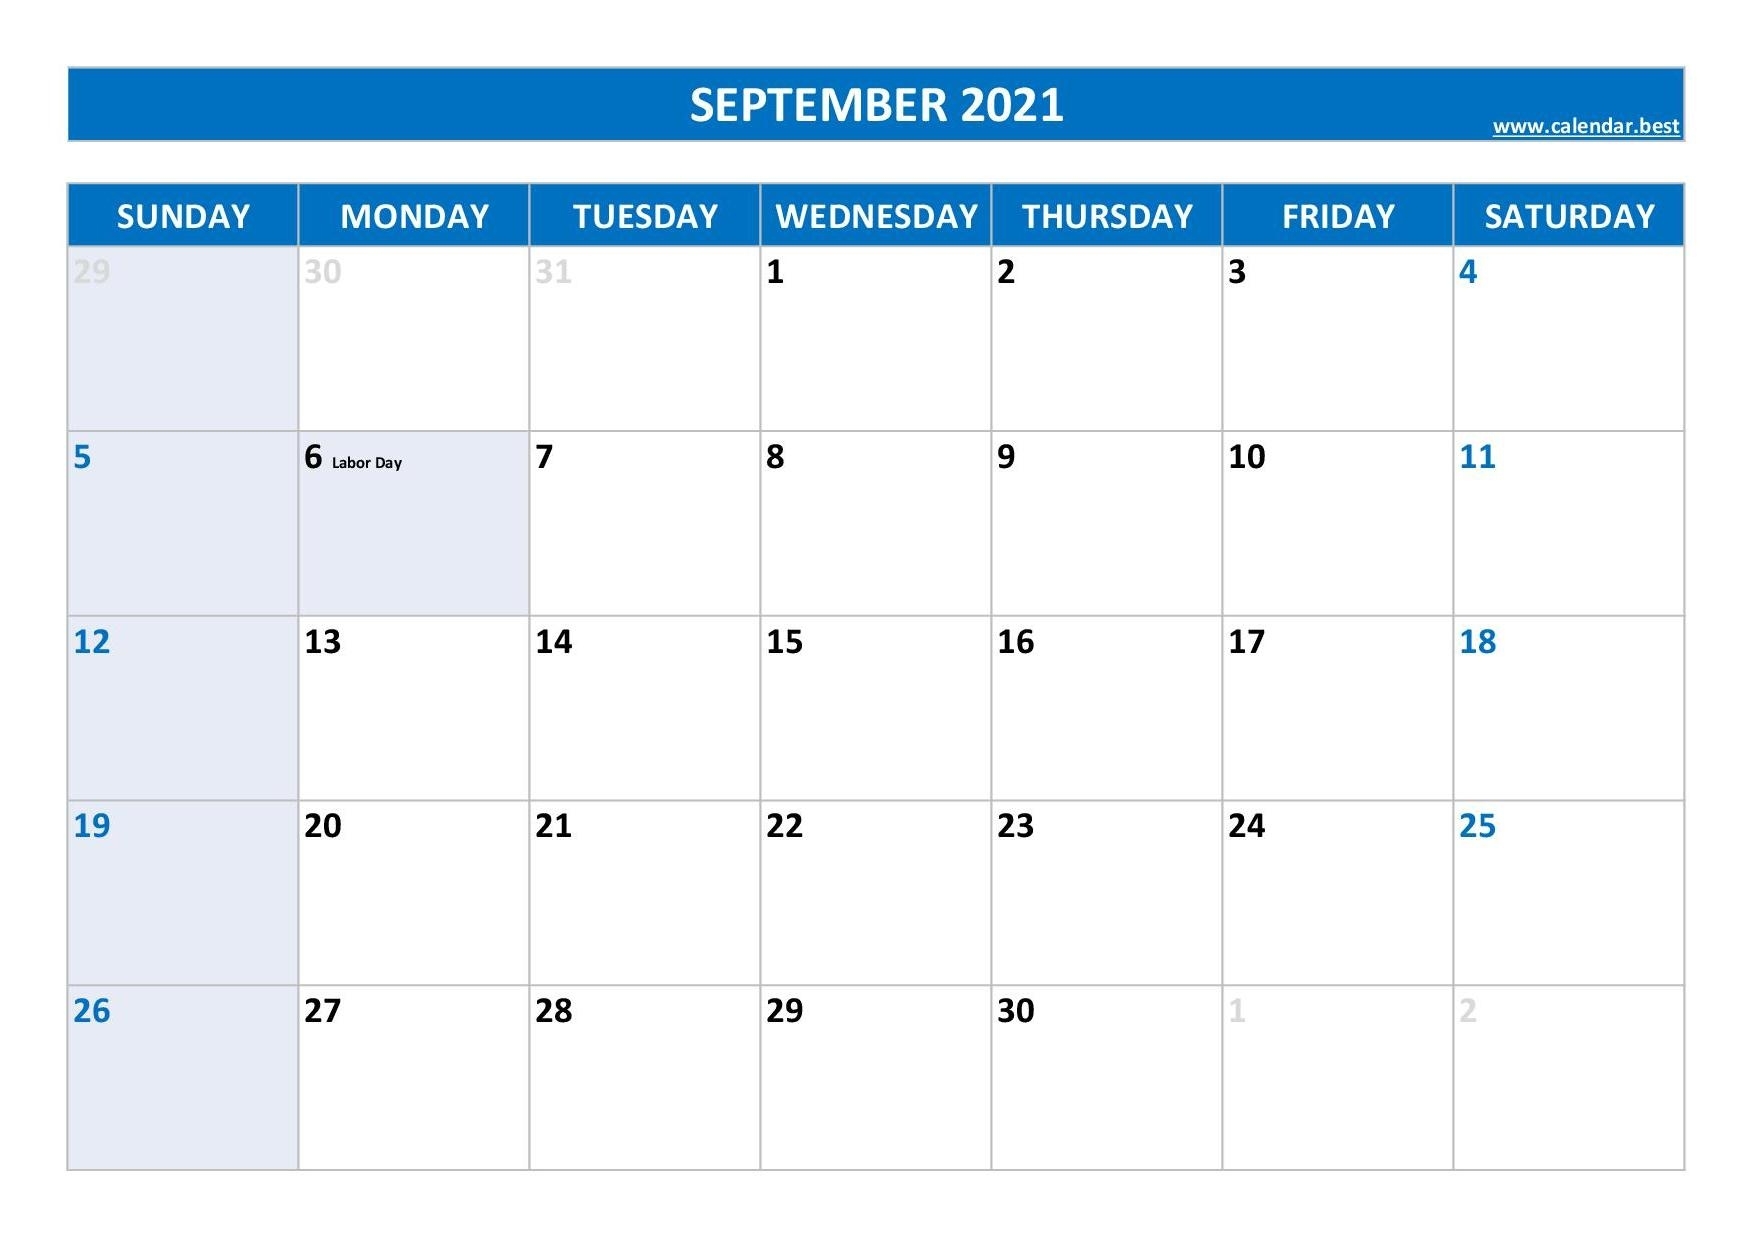 September 2021 Calendar -Calendar.best September 2021 Monthly Calendar